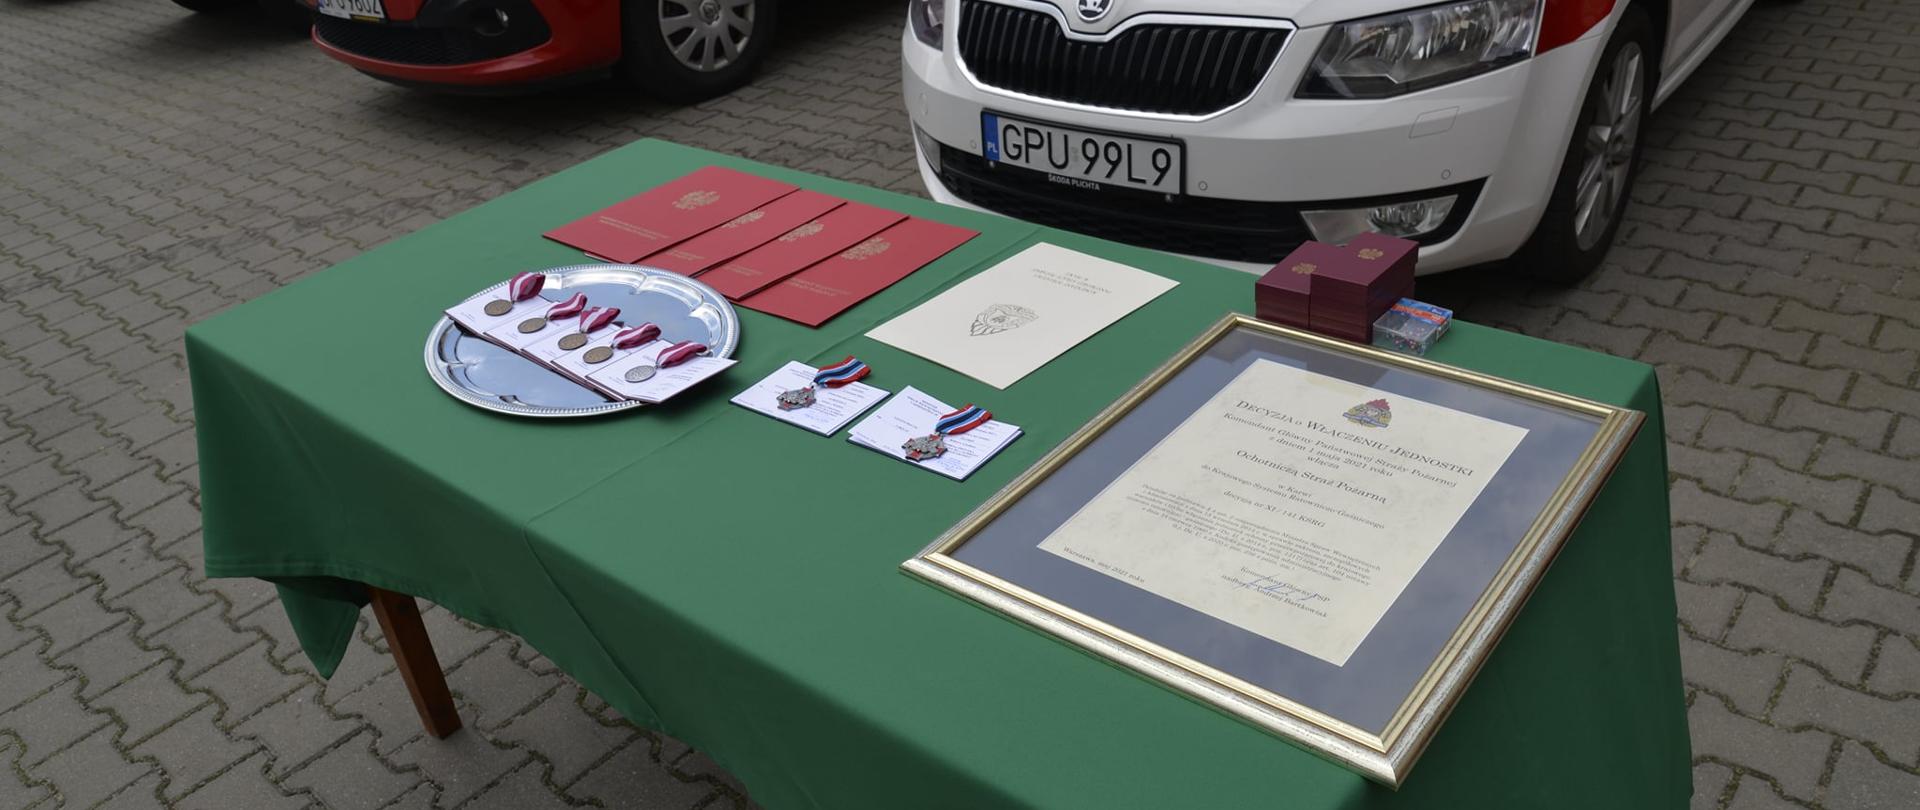 Zdjęcie przedstawia medale oraz odznaki leżące na stole.